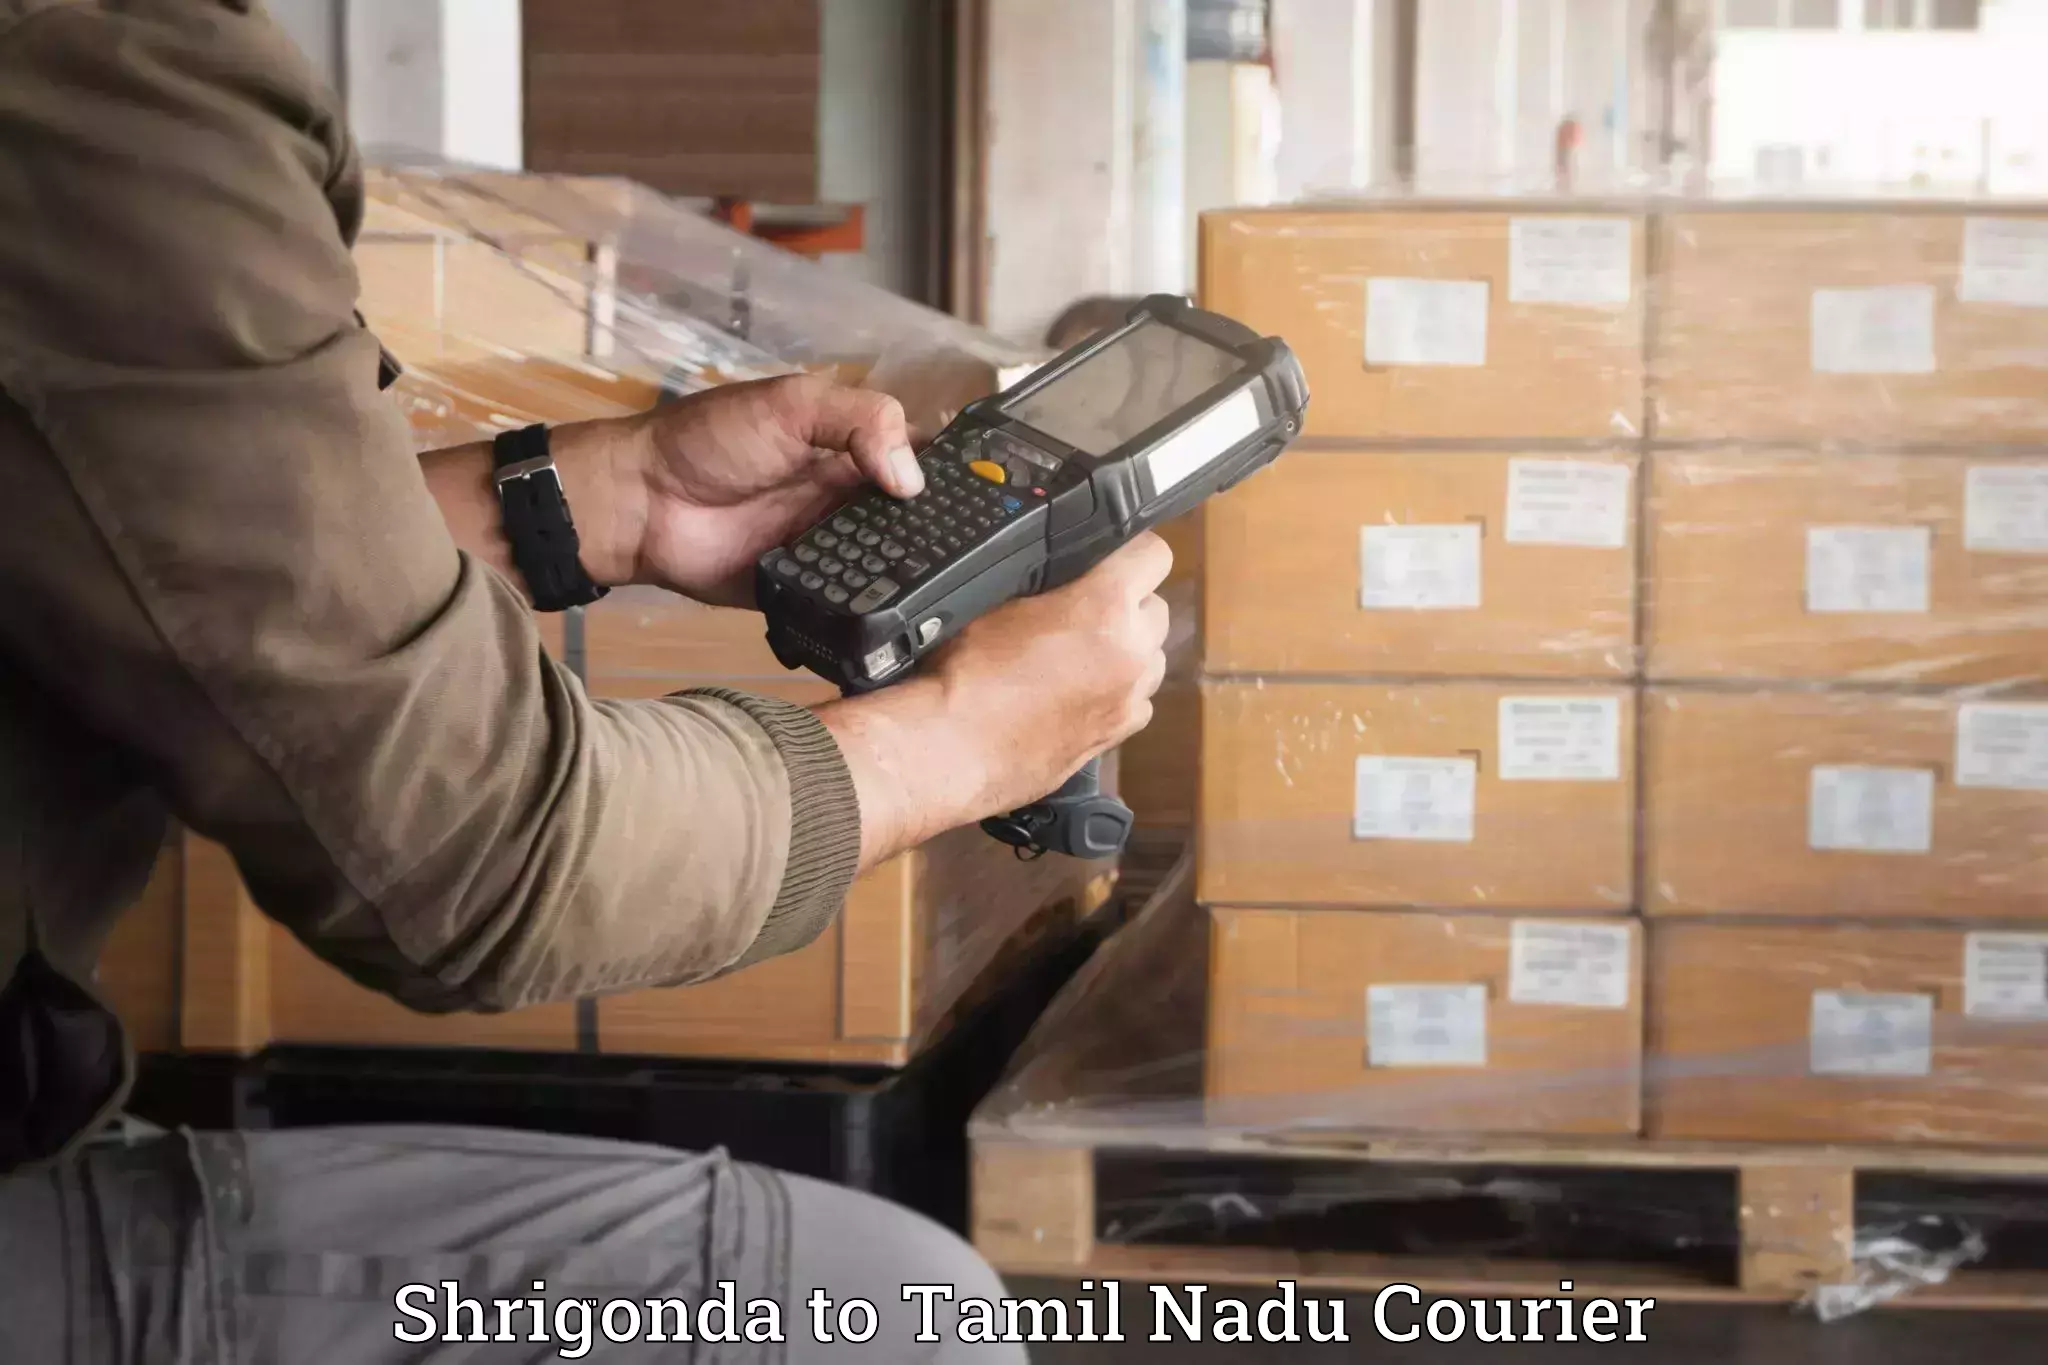 Luggage delivery network Shrigonda to Gudiyattam